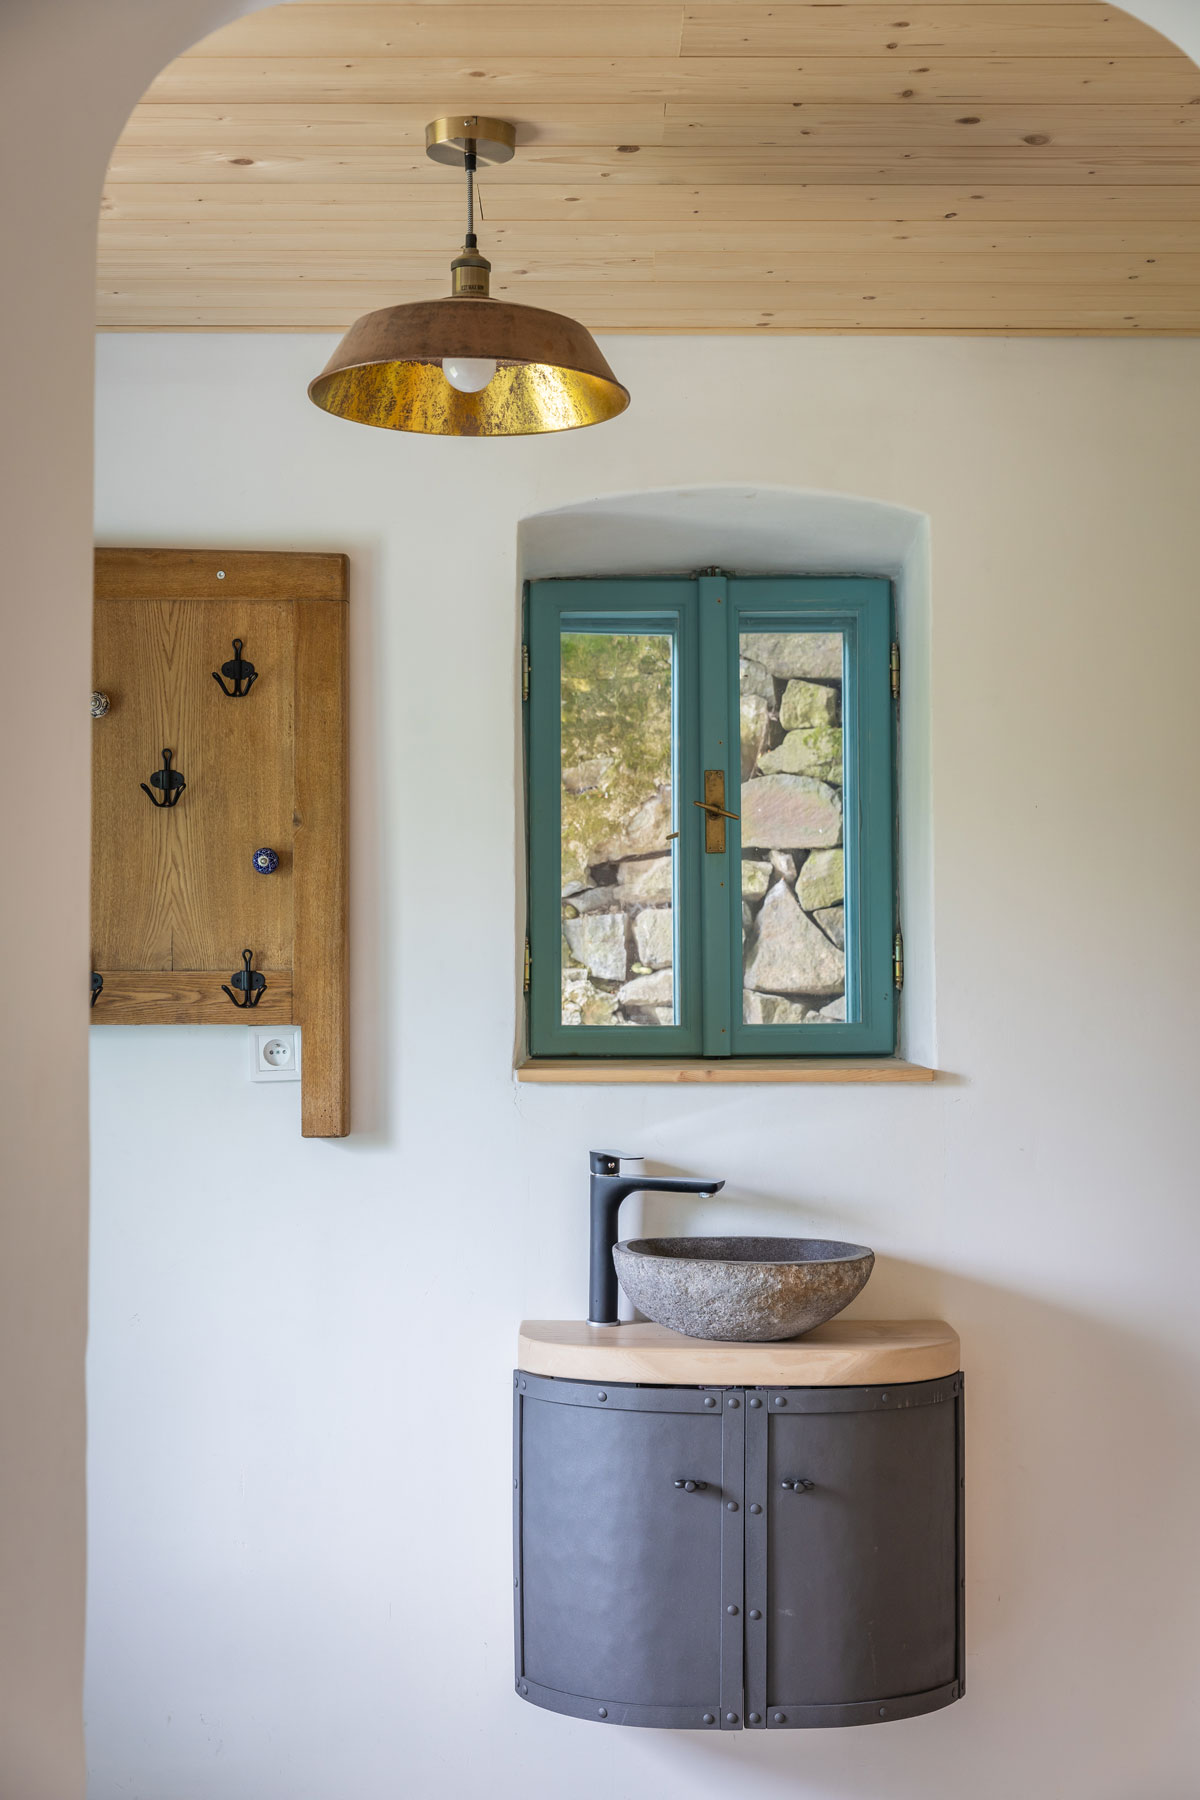 jednoduchá kúpeľňa v chalupe s oknom v rámom natretým na modro, pod oknom je zrecyklovaná kovová skrinka s malým umývadlom, vedľa okna visí vešiak vyrobený z rámu postele